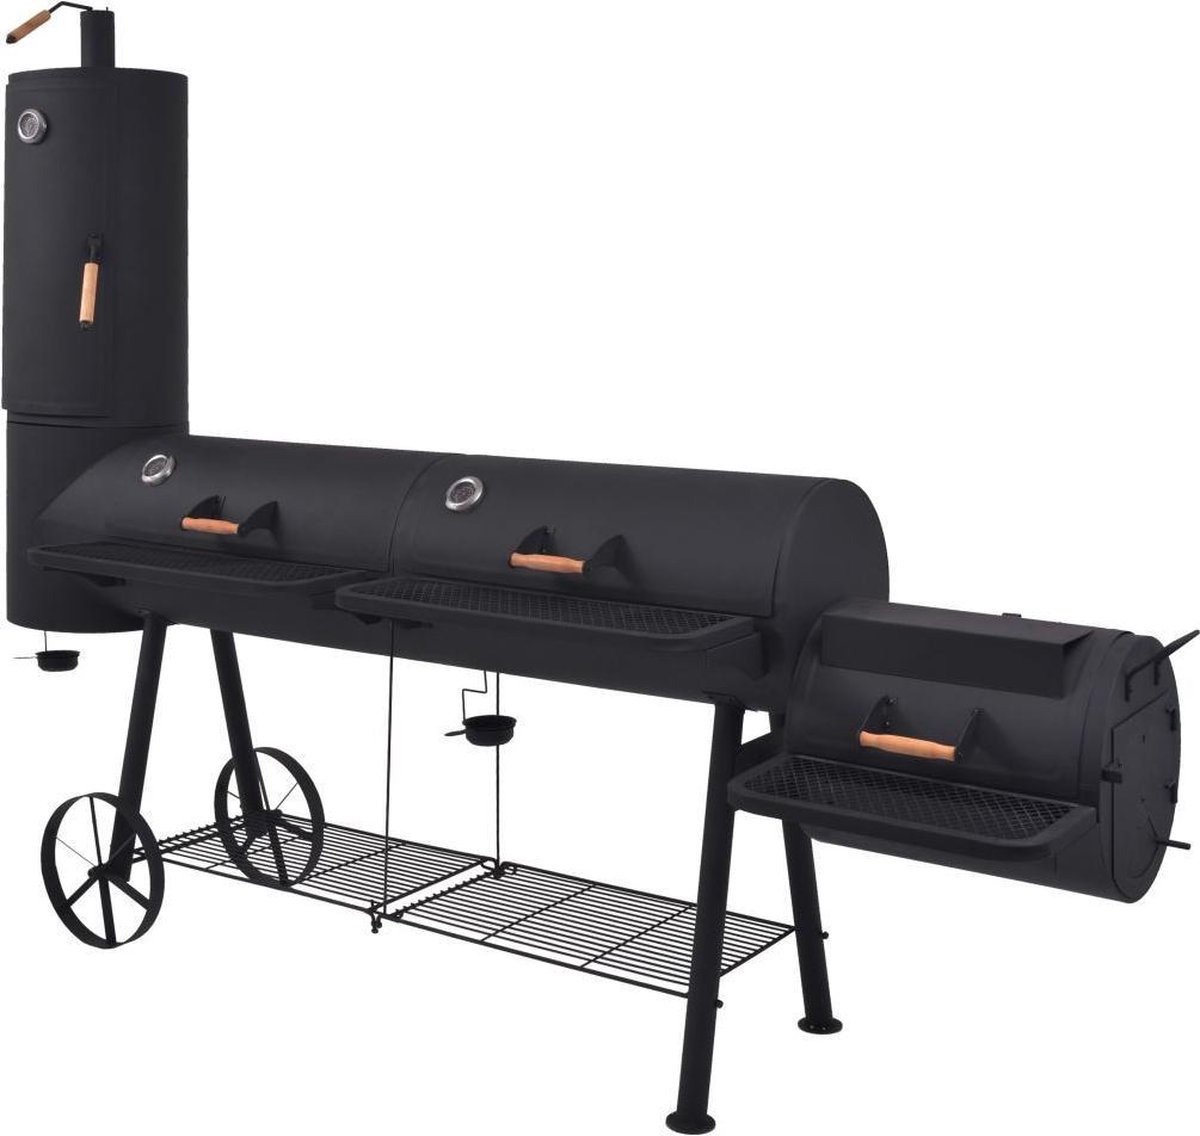 Vidaxl Houtskoolbarbecue Met Onderplank Xxxl - Zwart